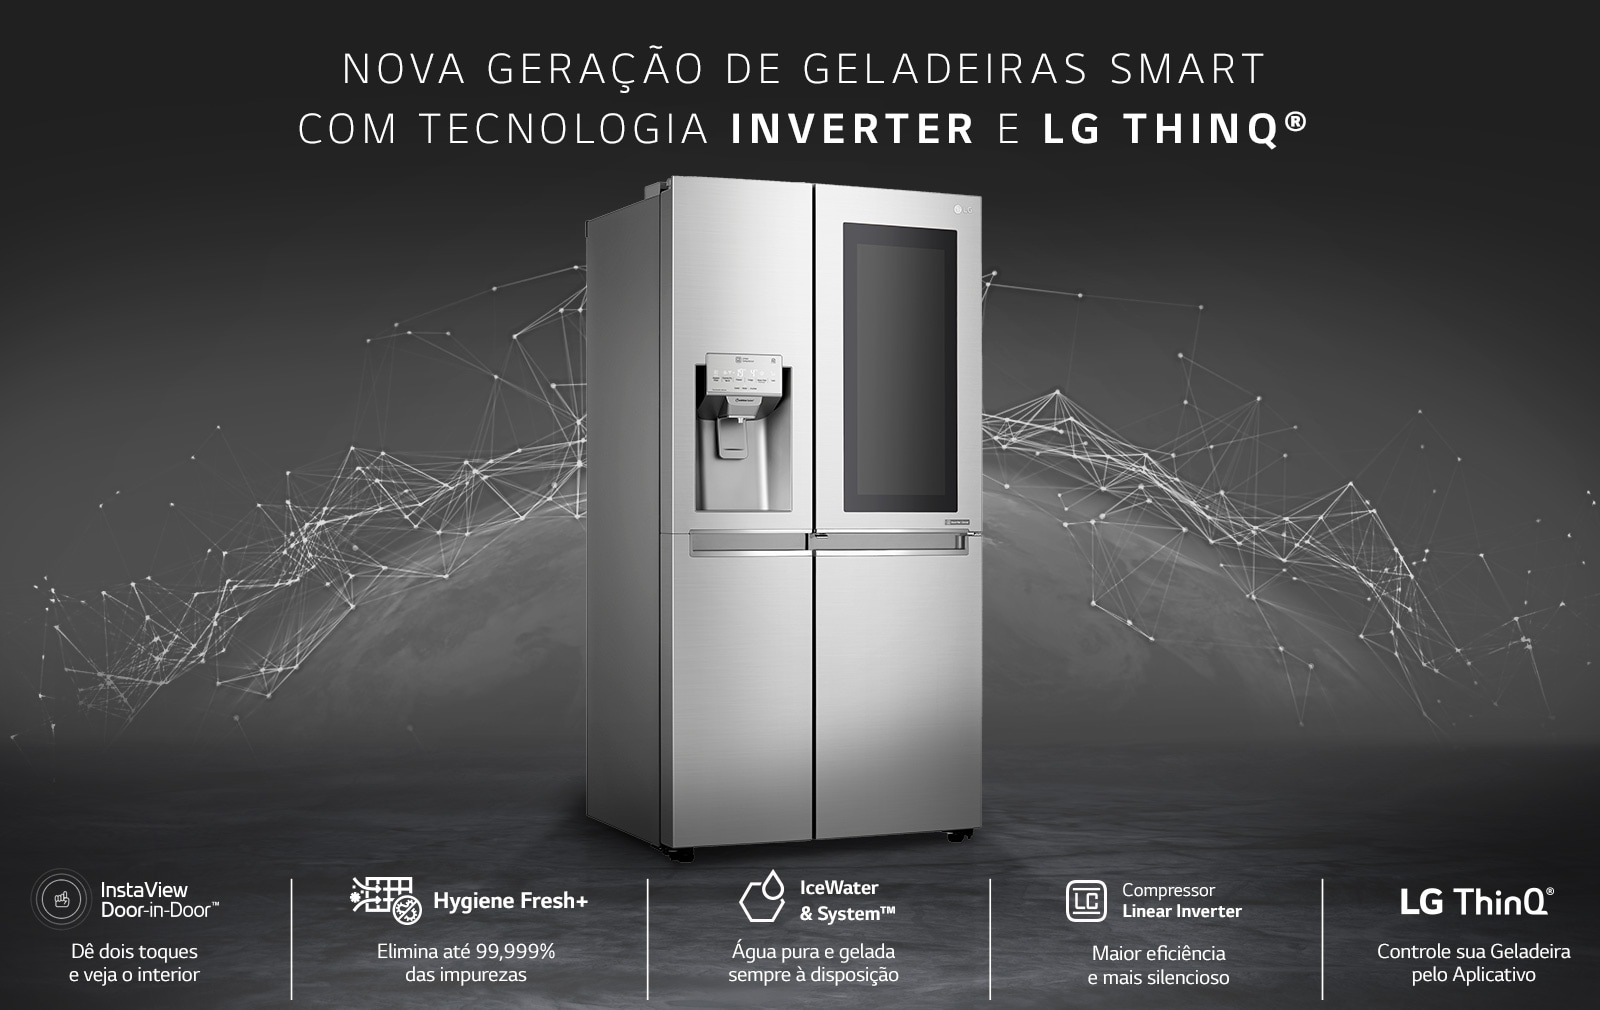 Nova geração de gealdeiras Smart com tecnologia Inverter e LG ThinQ®